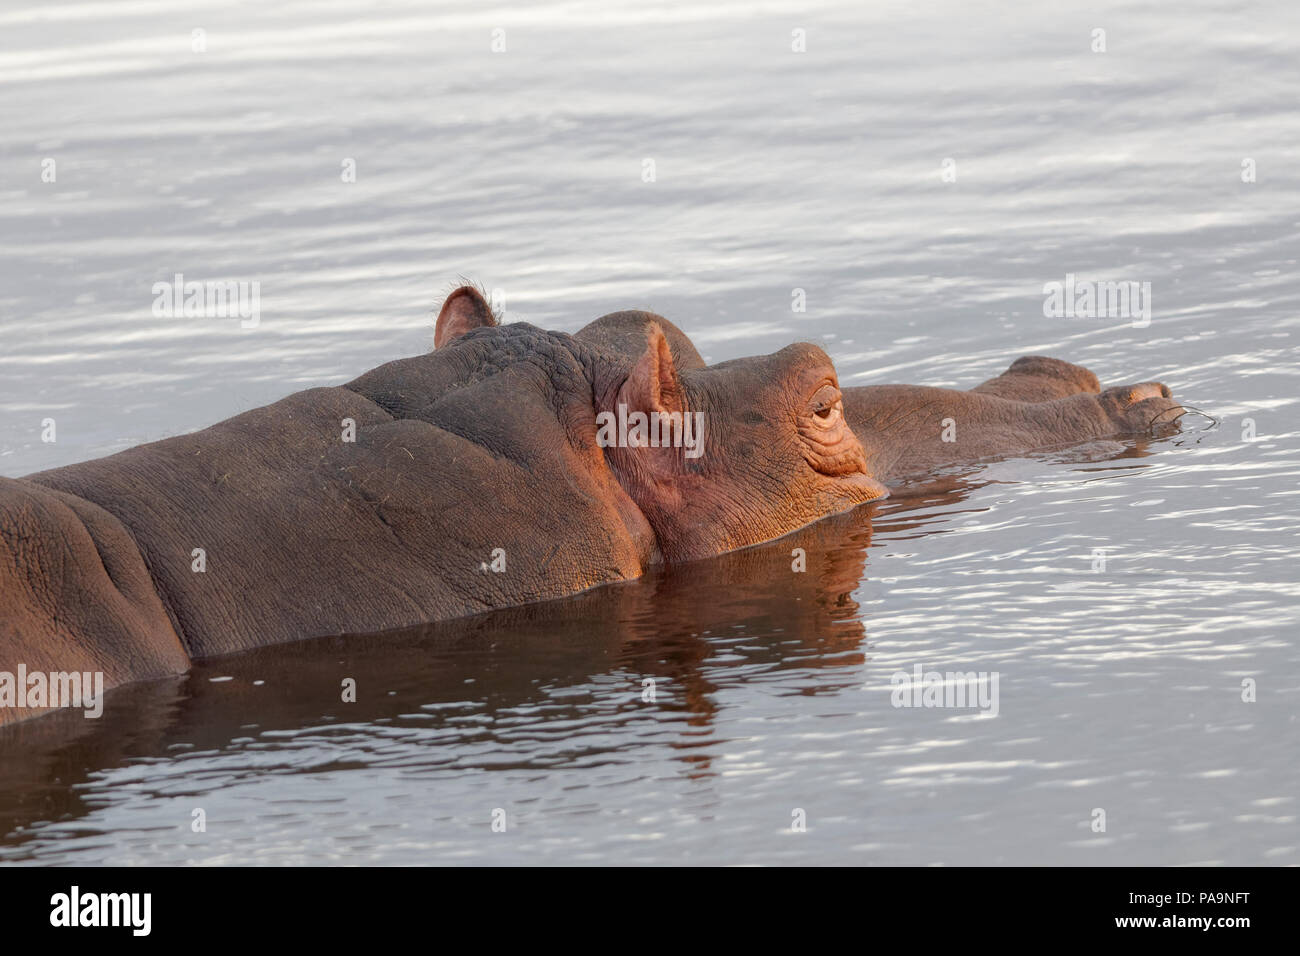 Hippopotame (Hippopotamus amphibius) baignade dans la rivière Olifants, Kruger National Park, Afrique du Sud, l'Afrique Banque D'Images